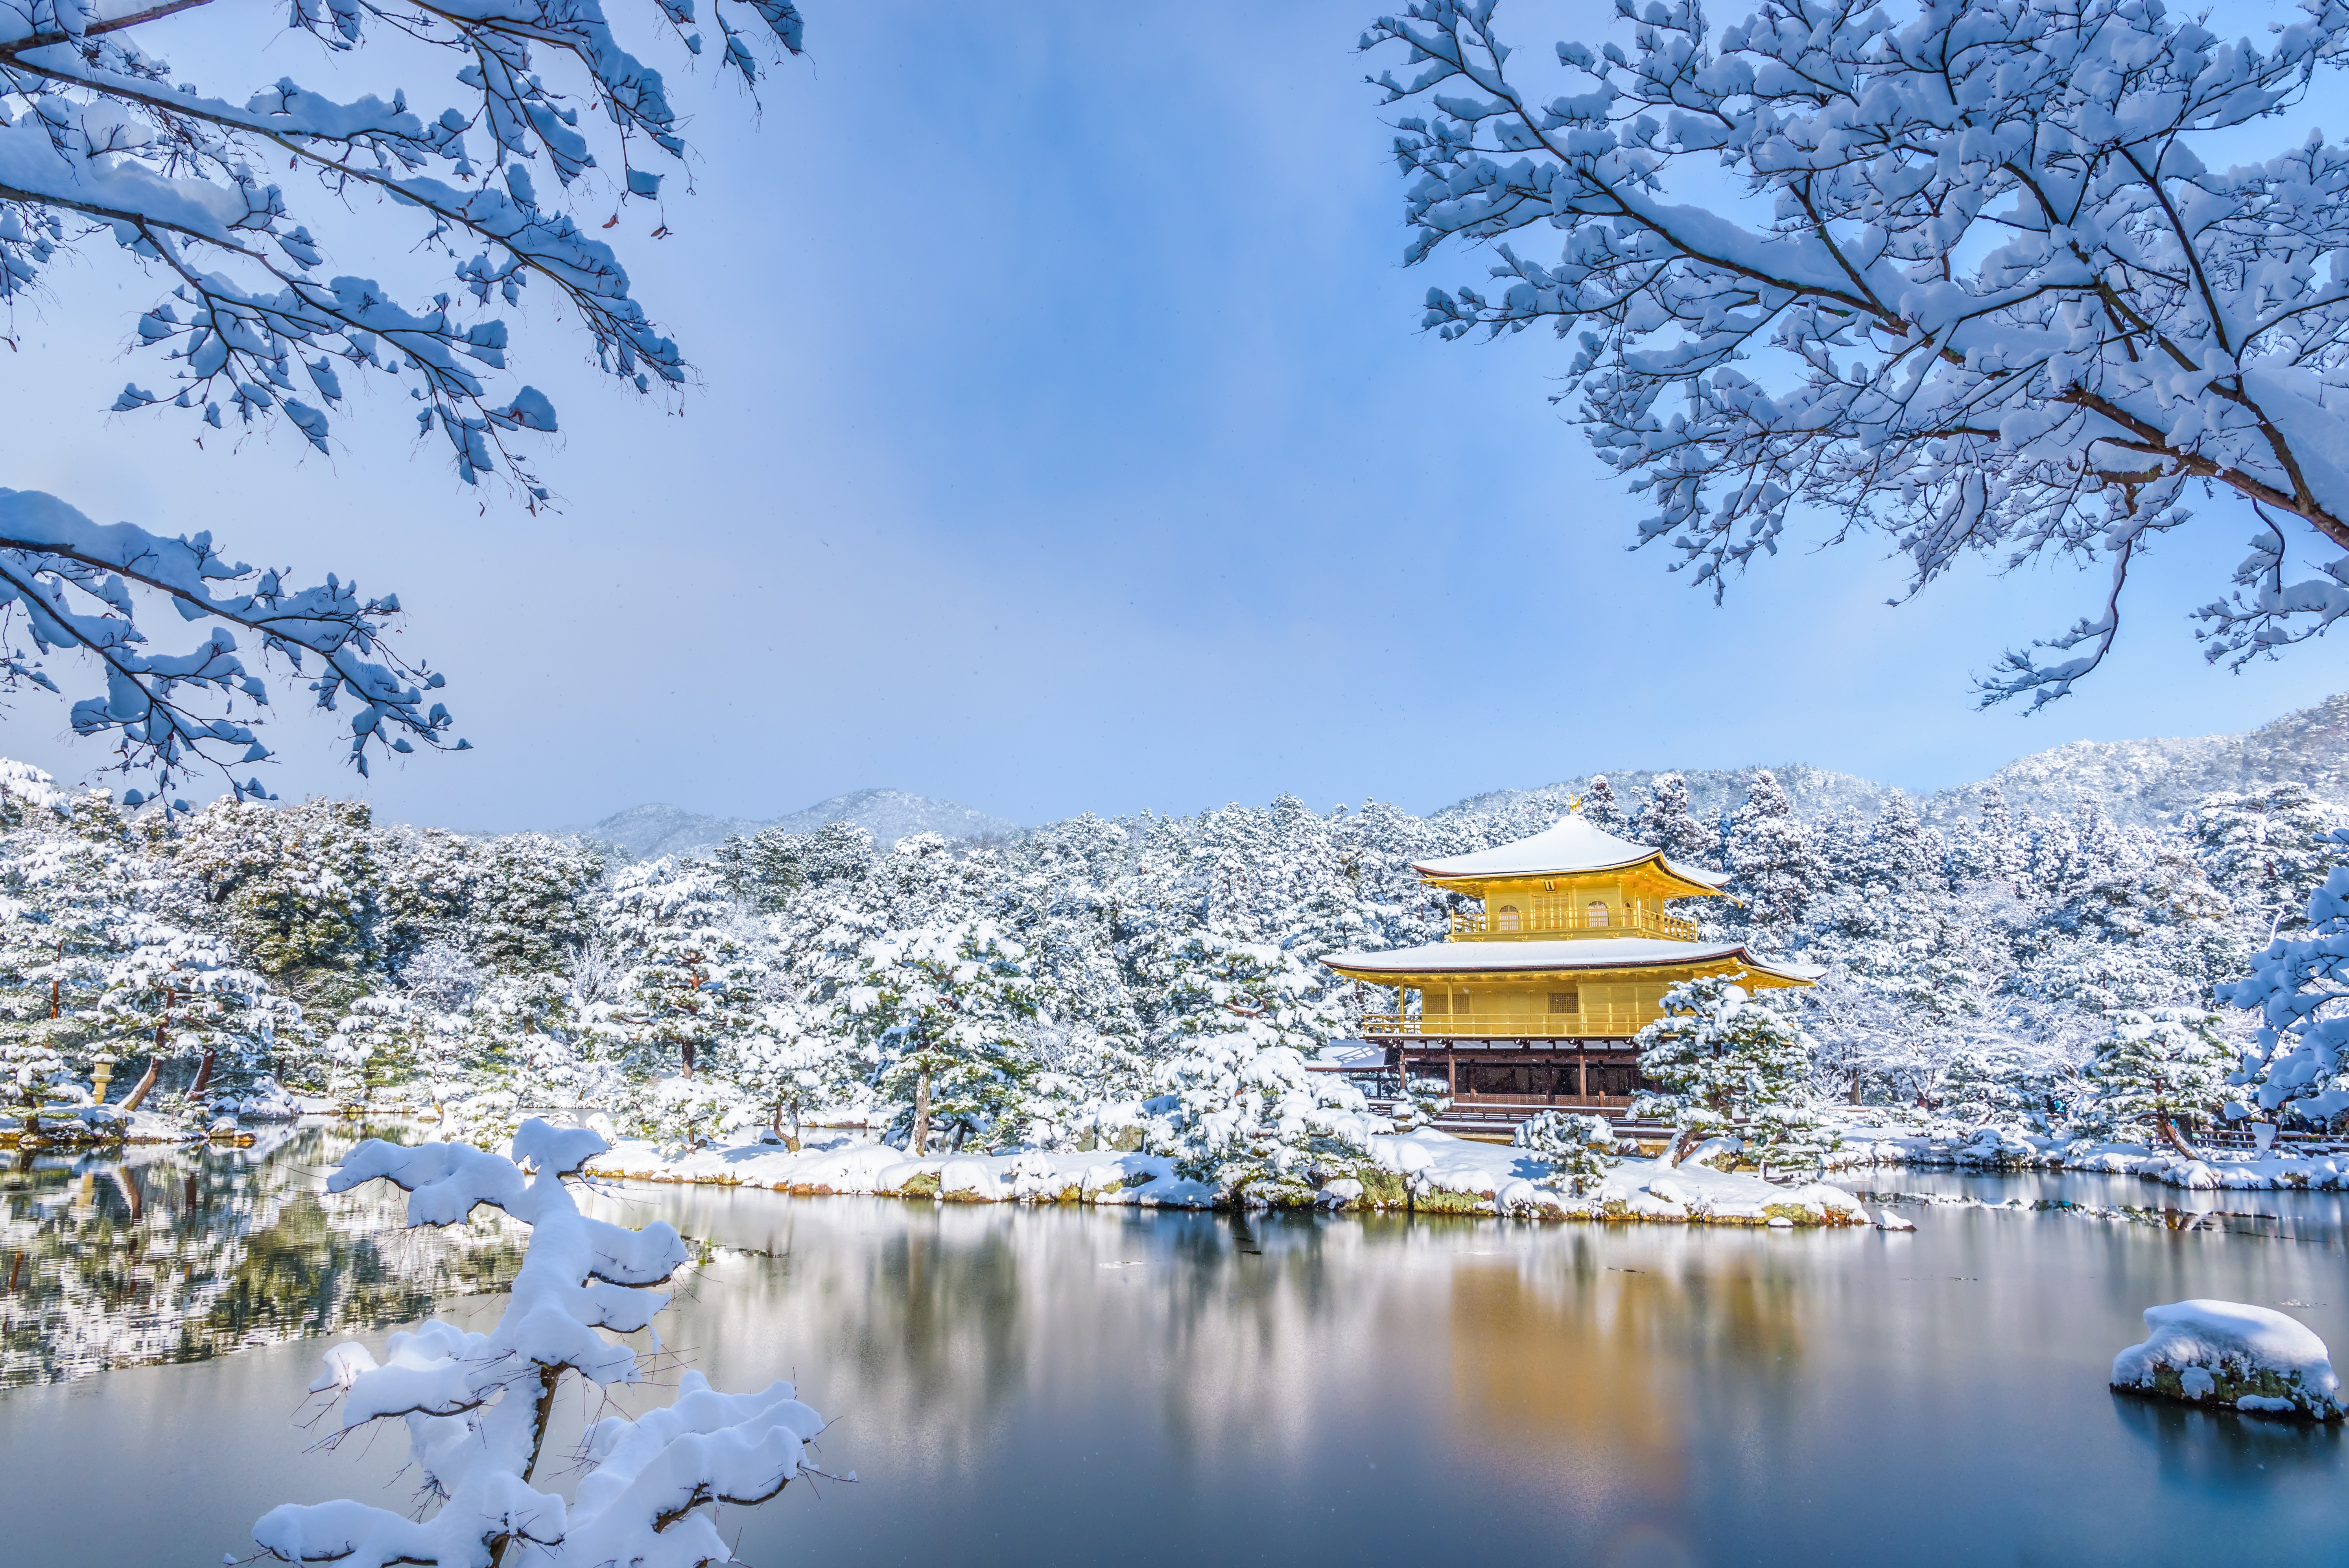 Скачать обои бесплатно Зима, Снег, Отражение, Парк, Пагода, Религиозные картинка на рабочий стол ПК